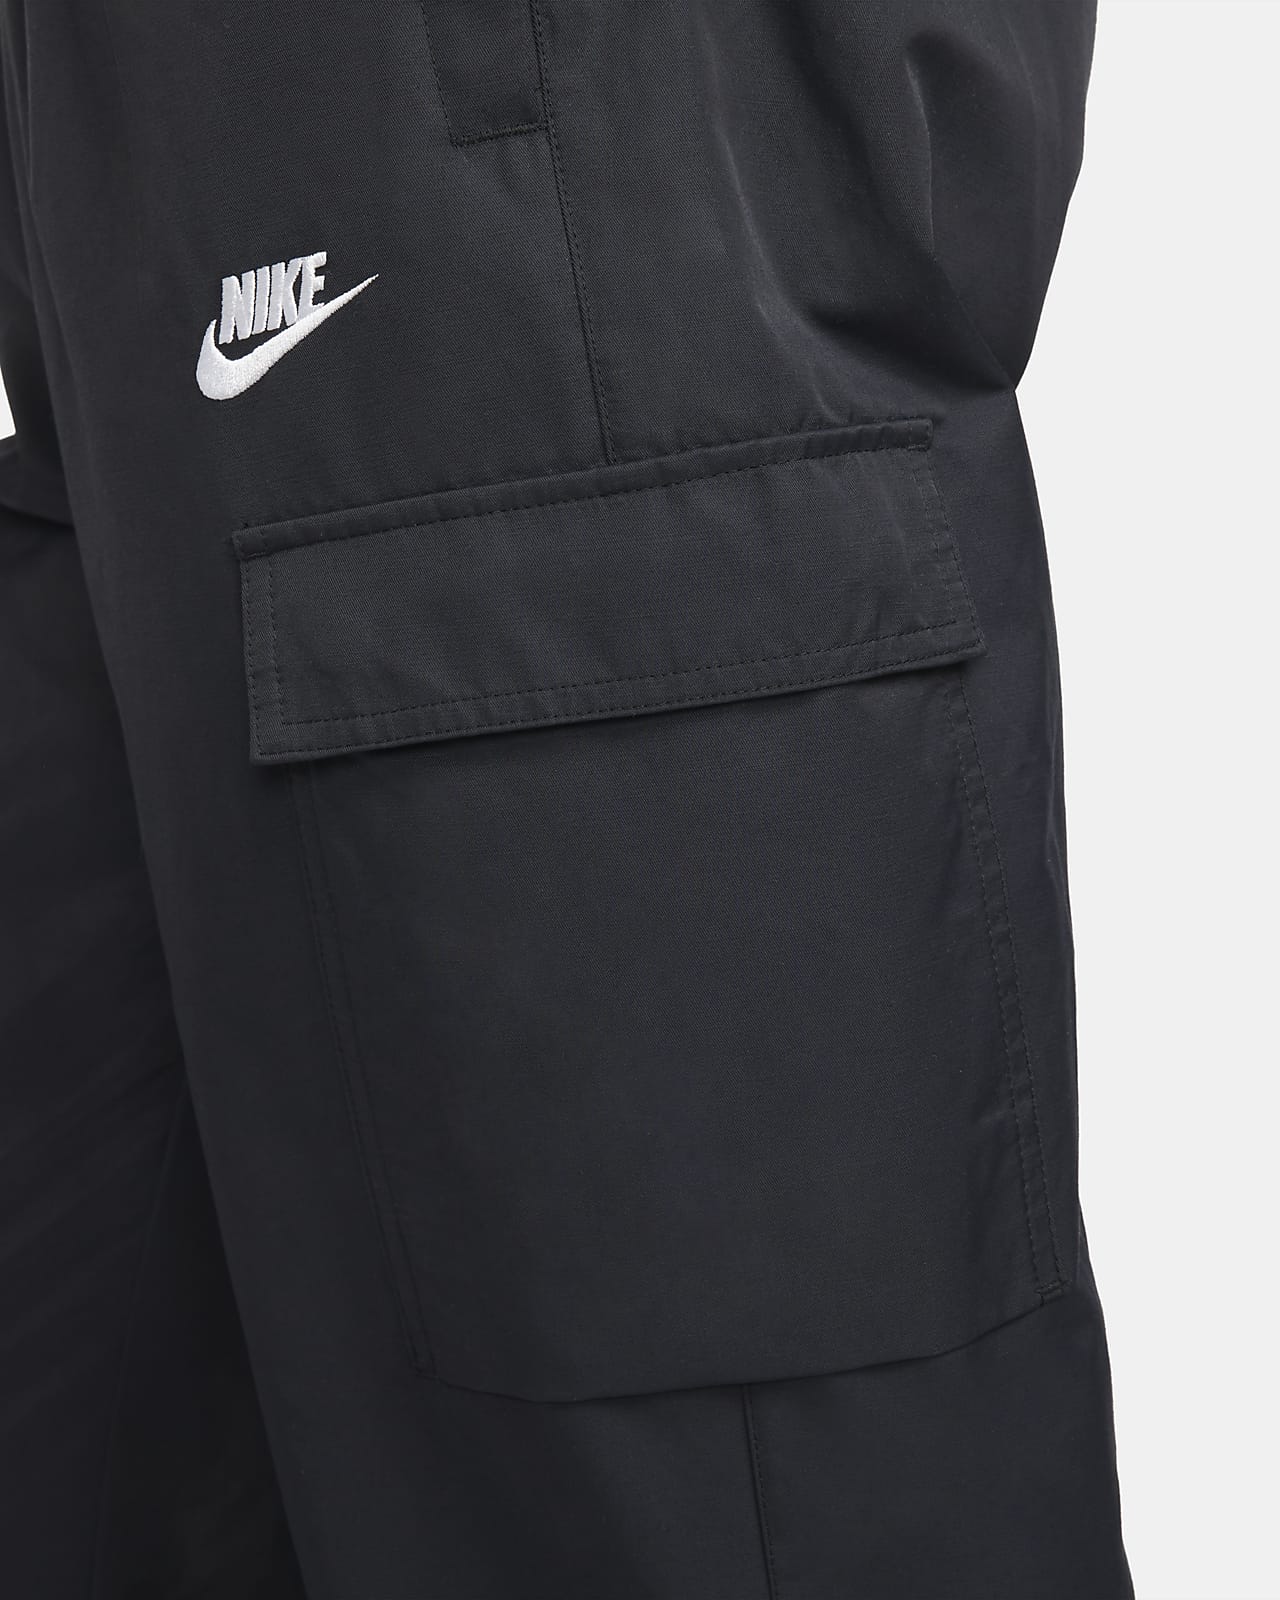 Size M 2XL $120 Nike Men's Sportswear NSW Hybrid Woven Pants Jogger